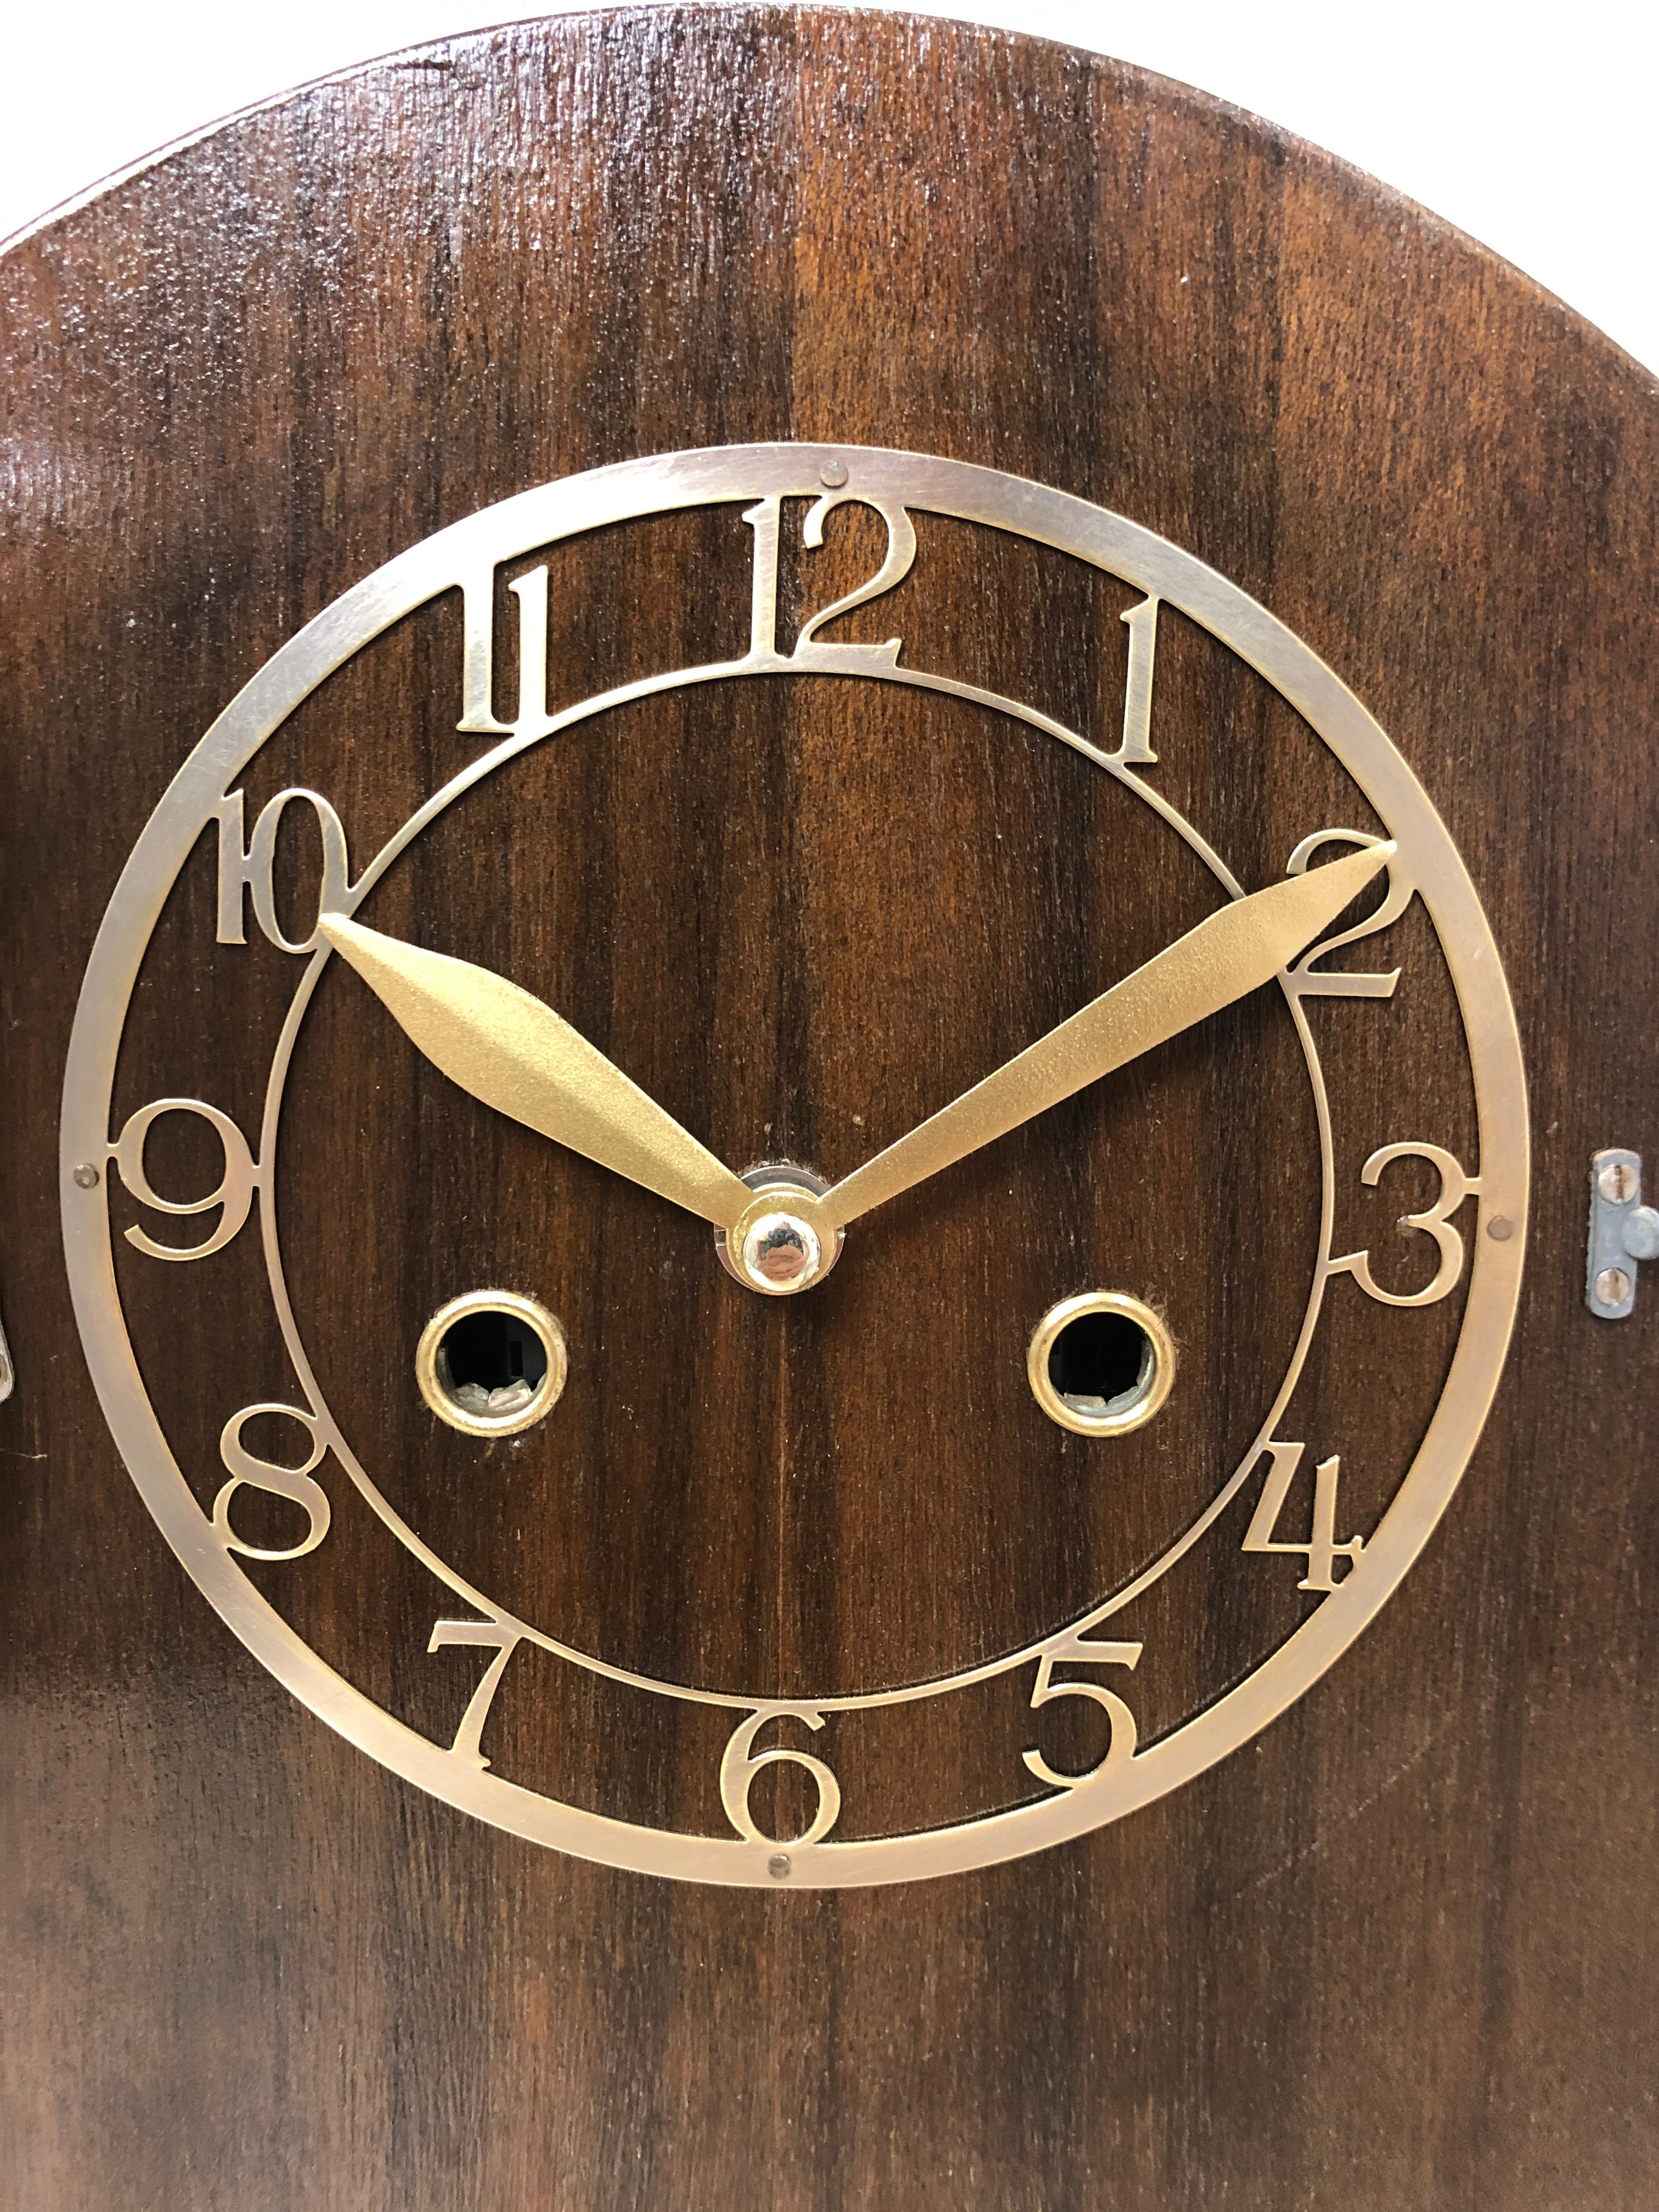 Vintage Battery Mantel Clock | eXibit collection